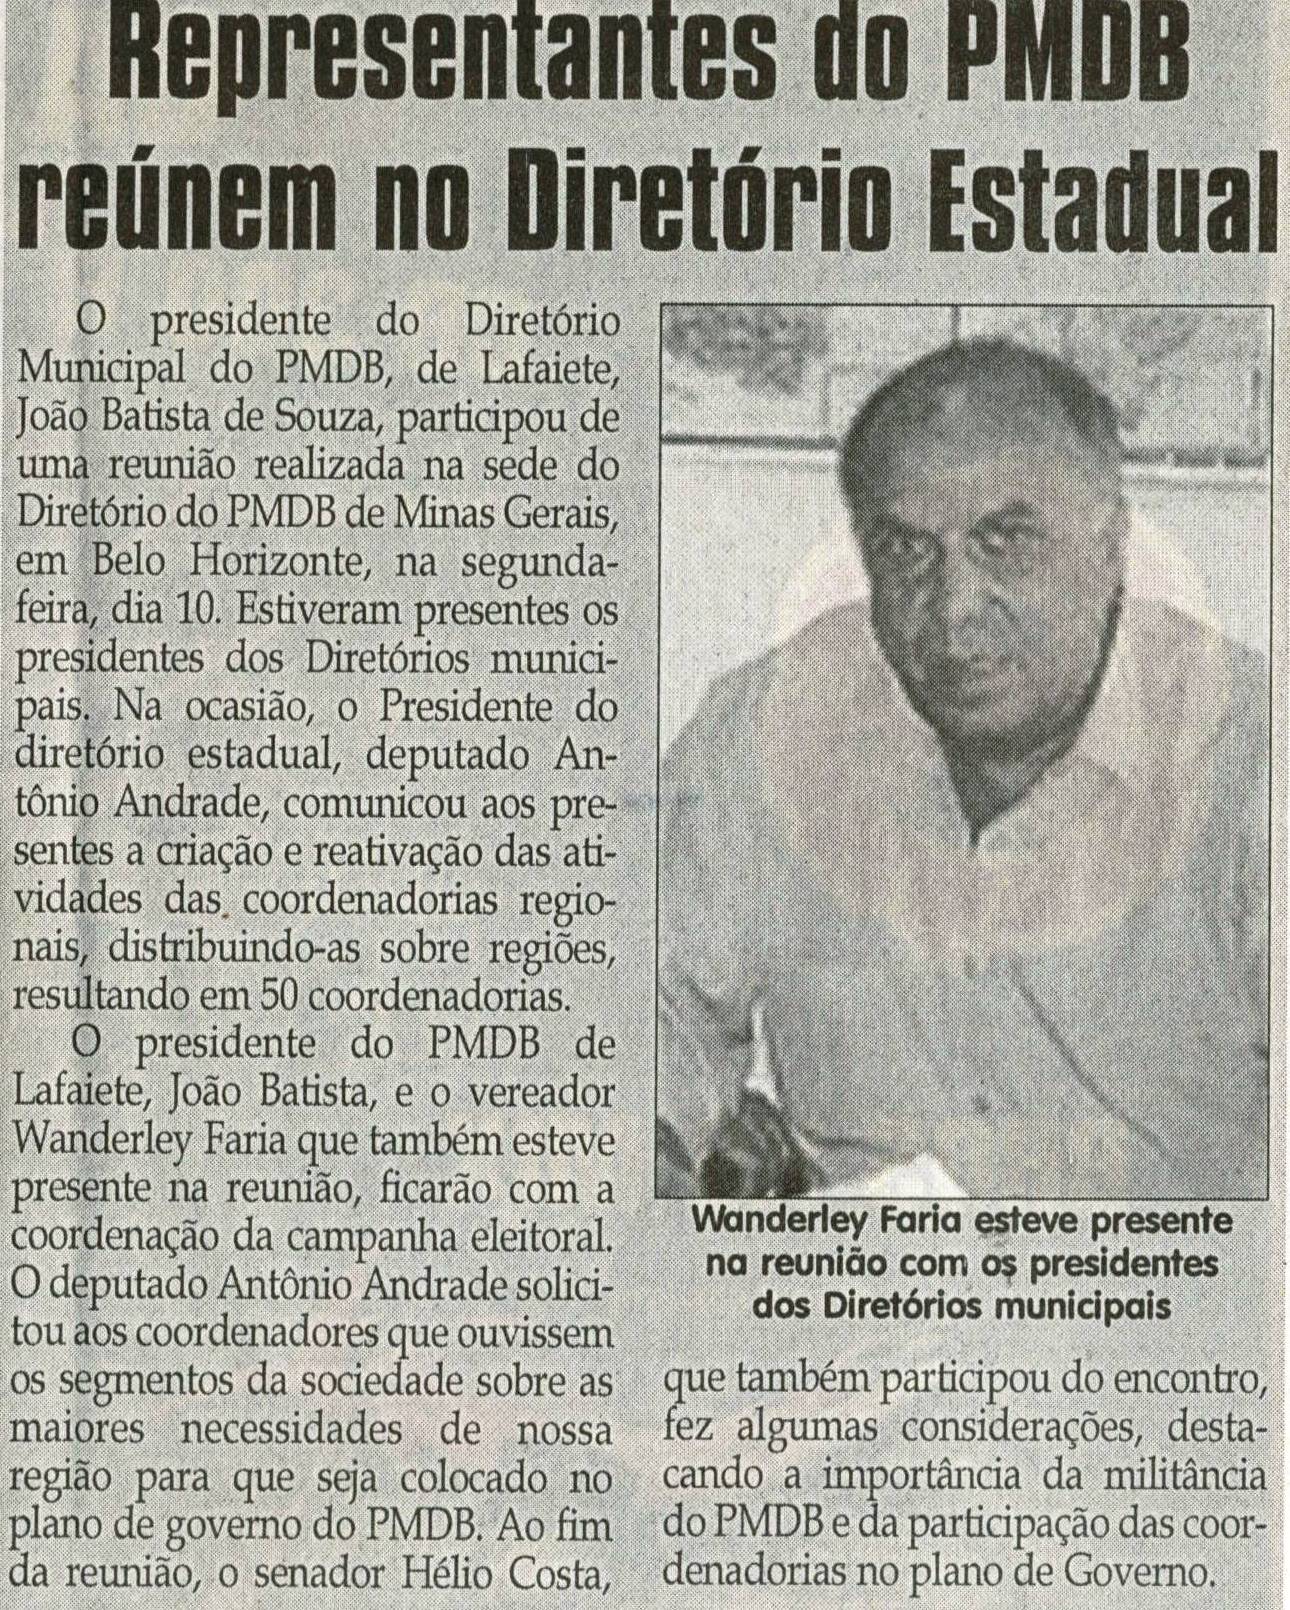 Representantes do PMDB reúnem no Diretório Estadual. Jornal Correio da Cidade, Conselheiro Lafaiete,15 mai. 2010, p. 04.